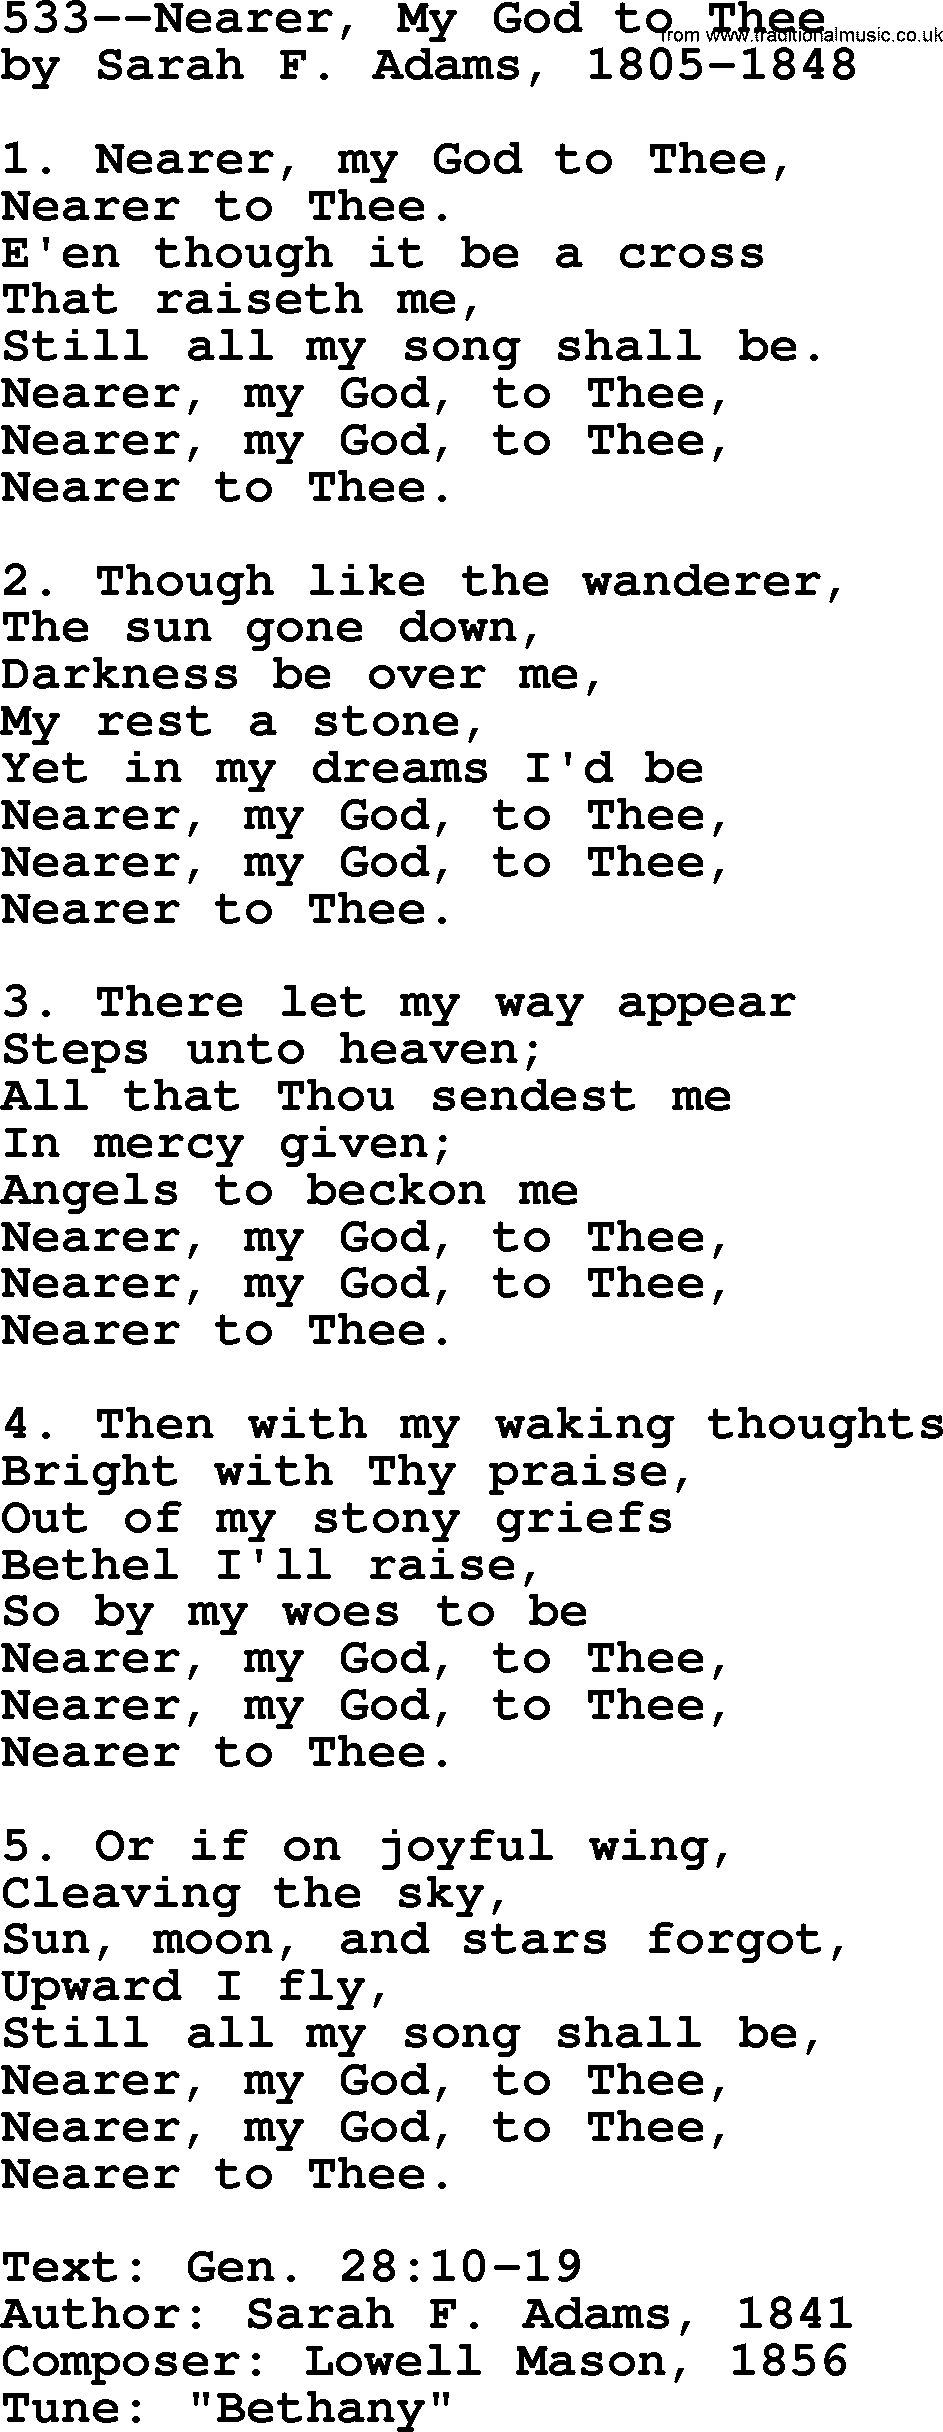 Lutheran Hymn: 533--Nearer, My God to Thee.txt lyrics with PDF